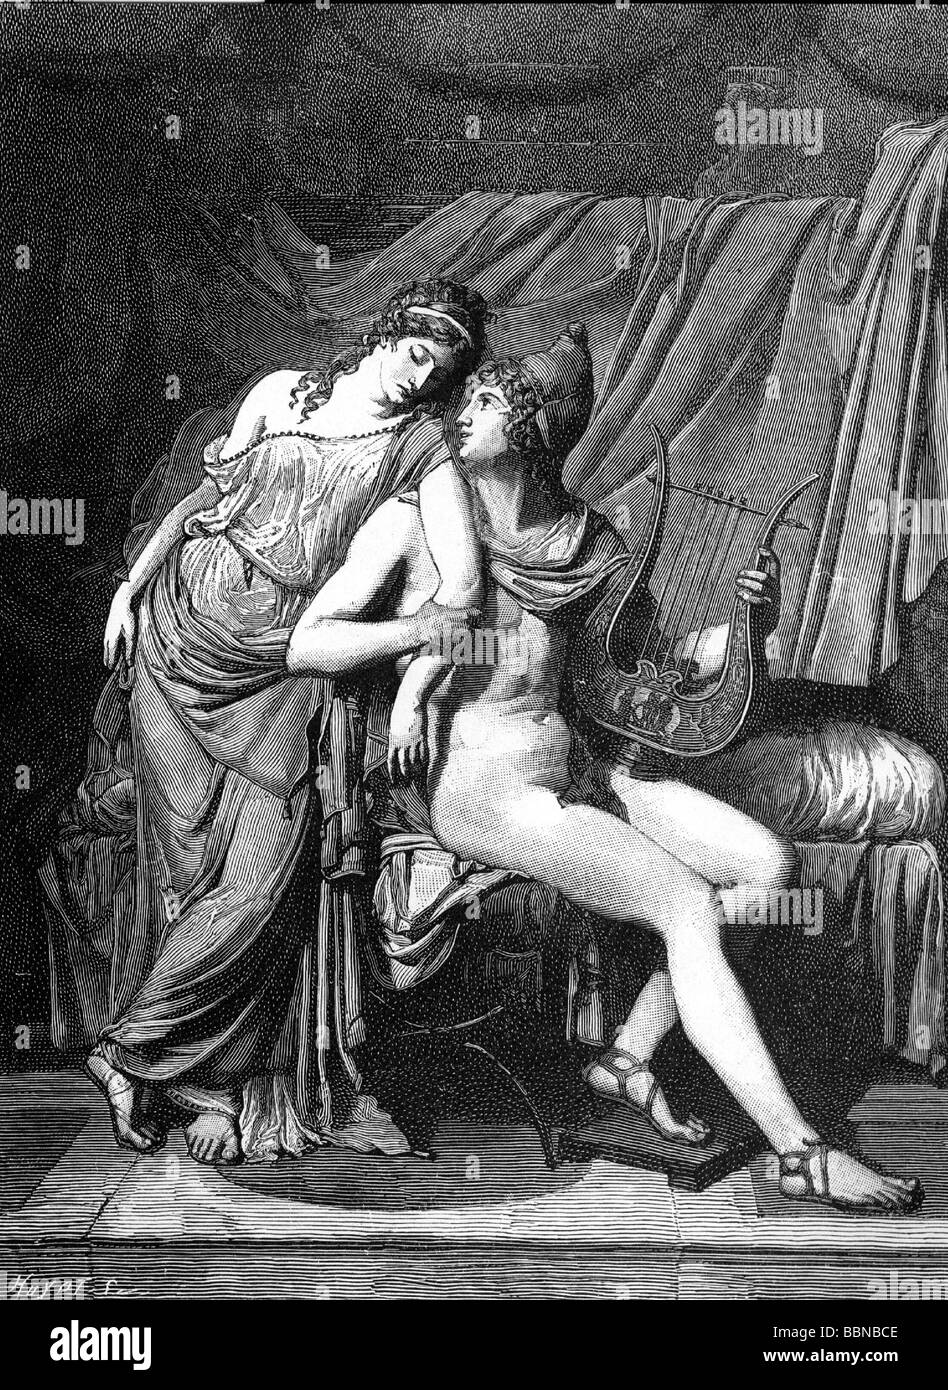 Parigi, figlio di Priam, re di Troia, leggenda greca, lunghezza intera, con Helen, incisione in legno da pittura di Jaques Louis David, Louvre, Foto Stock